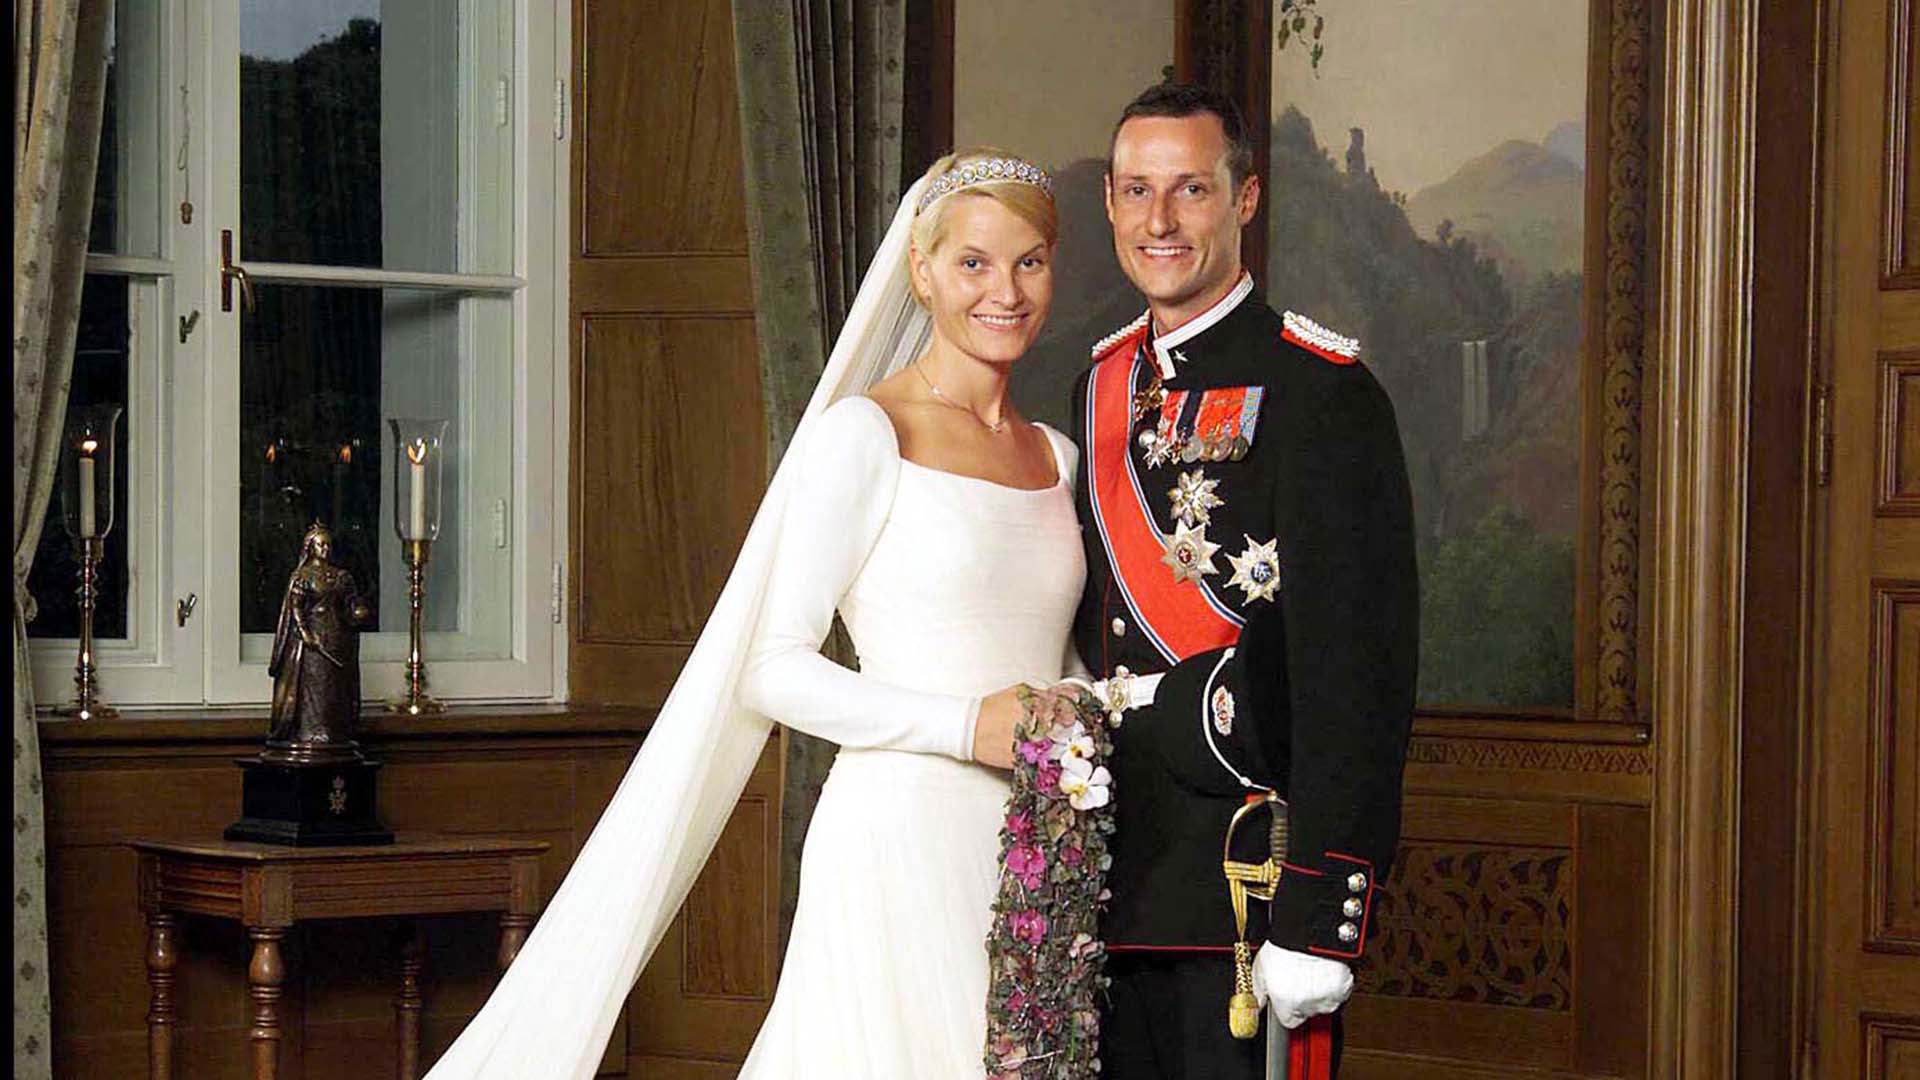 Mette-Marit y Haakon de Noruega contrajeron matrimonio en 2001